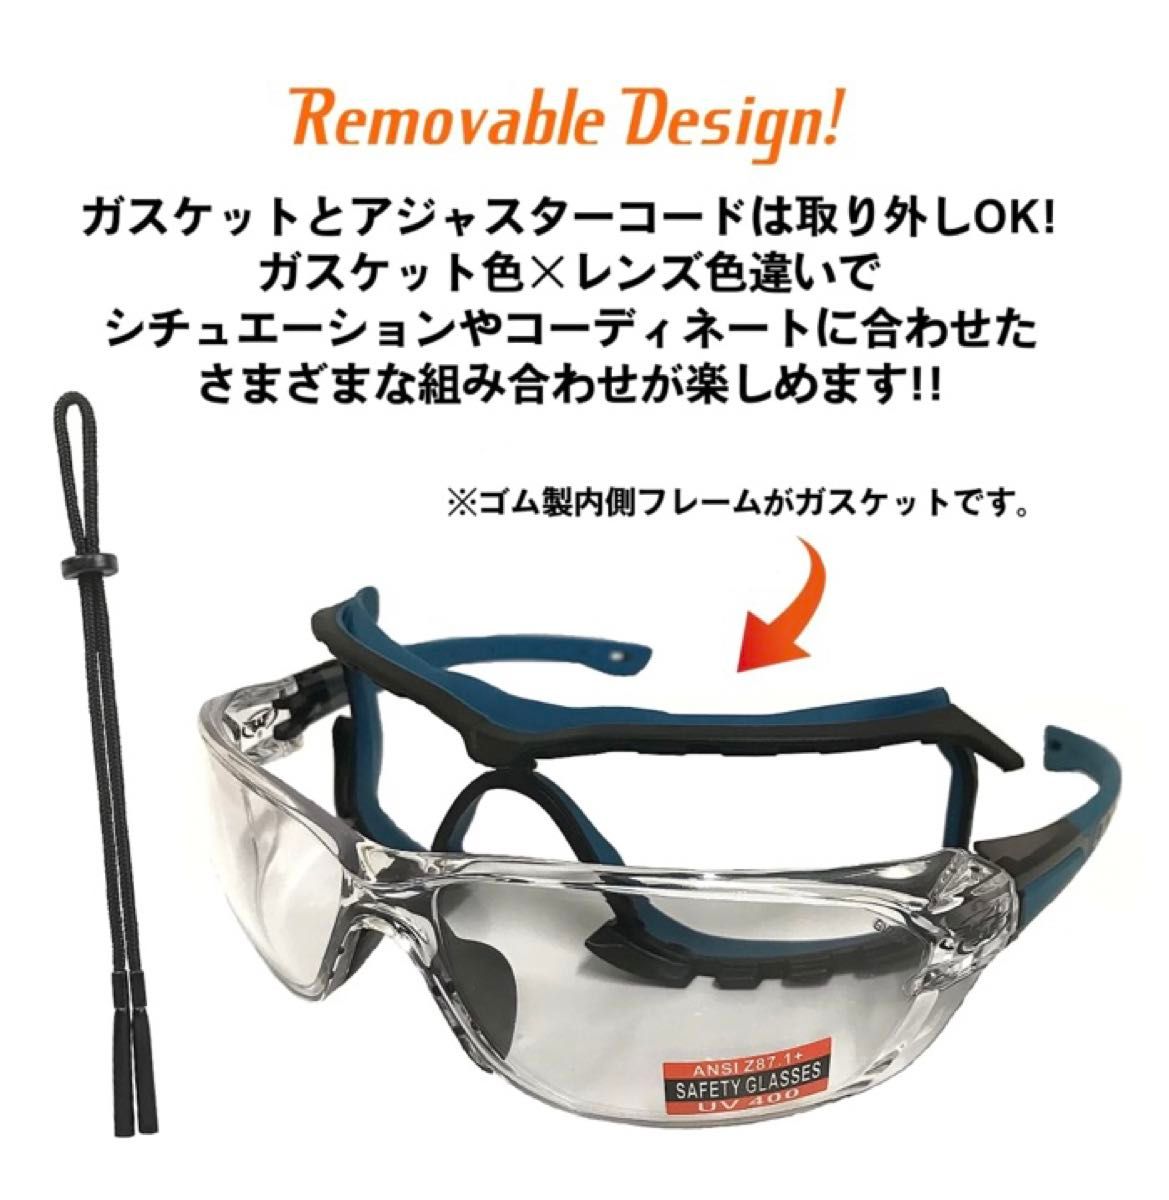 Global Vision オクタンパッド オートバイ スポーツサングラス 3ペア アイウェア サングラス 眼鏡 バイクウェア